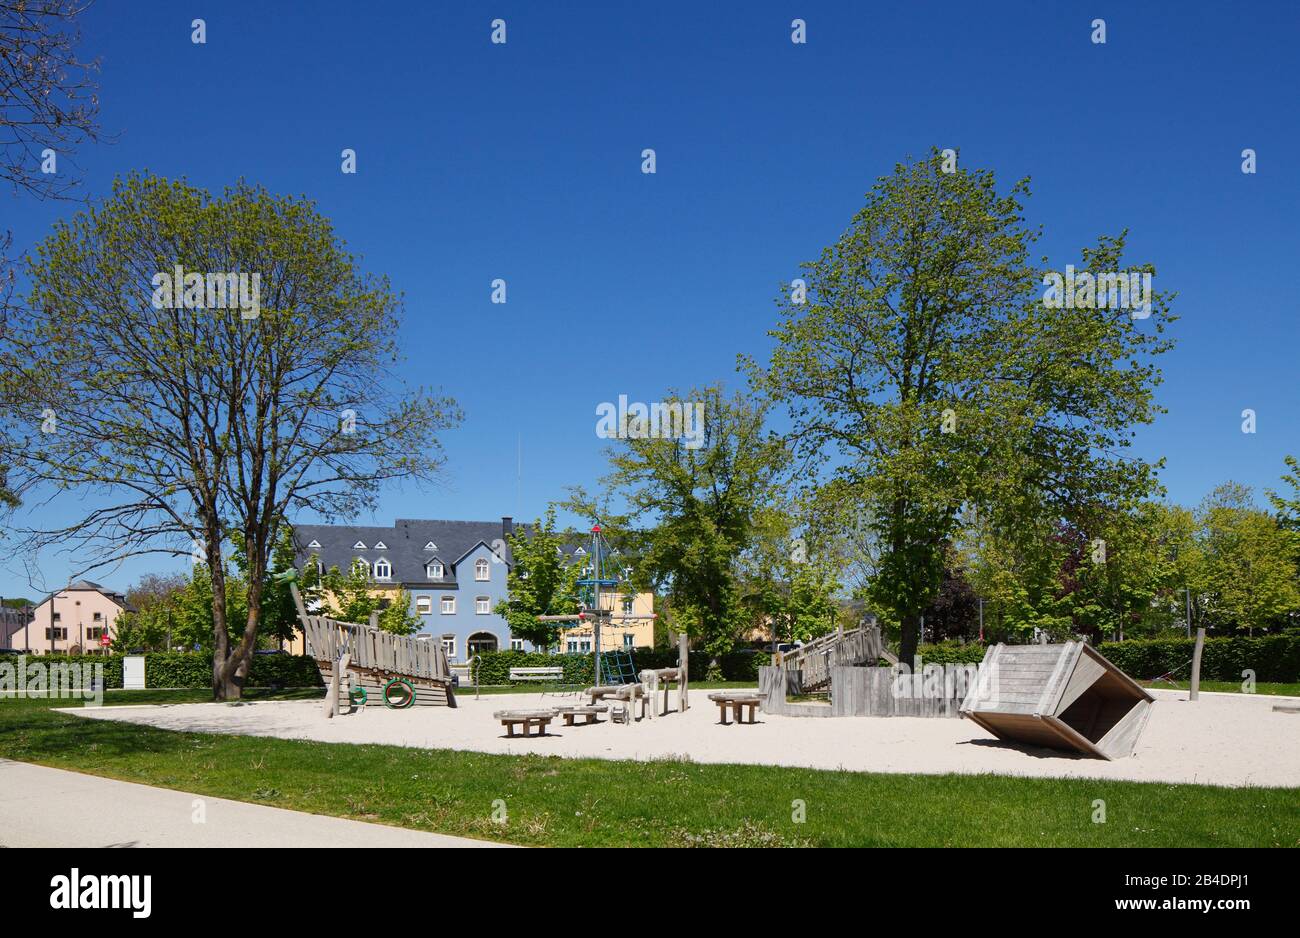 Grünanlage mit Spielplatz und Wohngebäuden, Bertrange, Batringen, Luxemburg, Europa Stock Photo